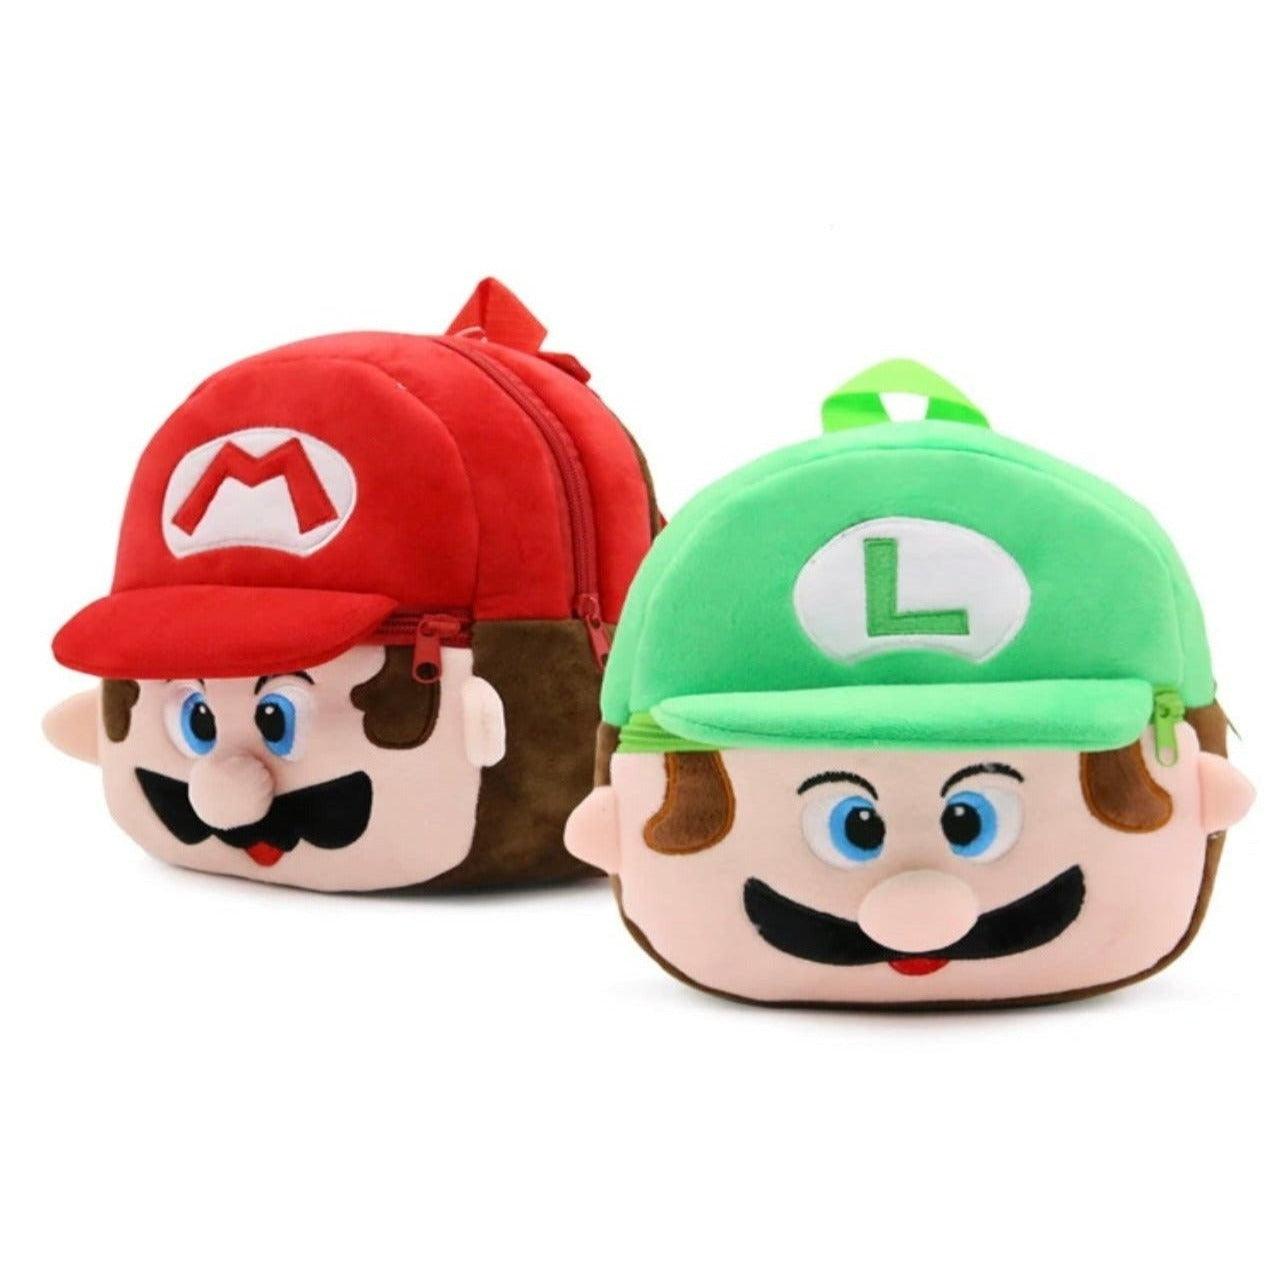 Mario & Luigi Backpack - Expat Life Style